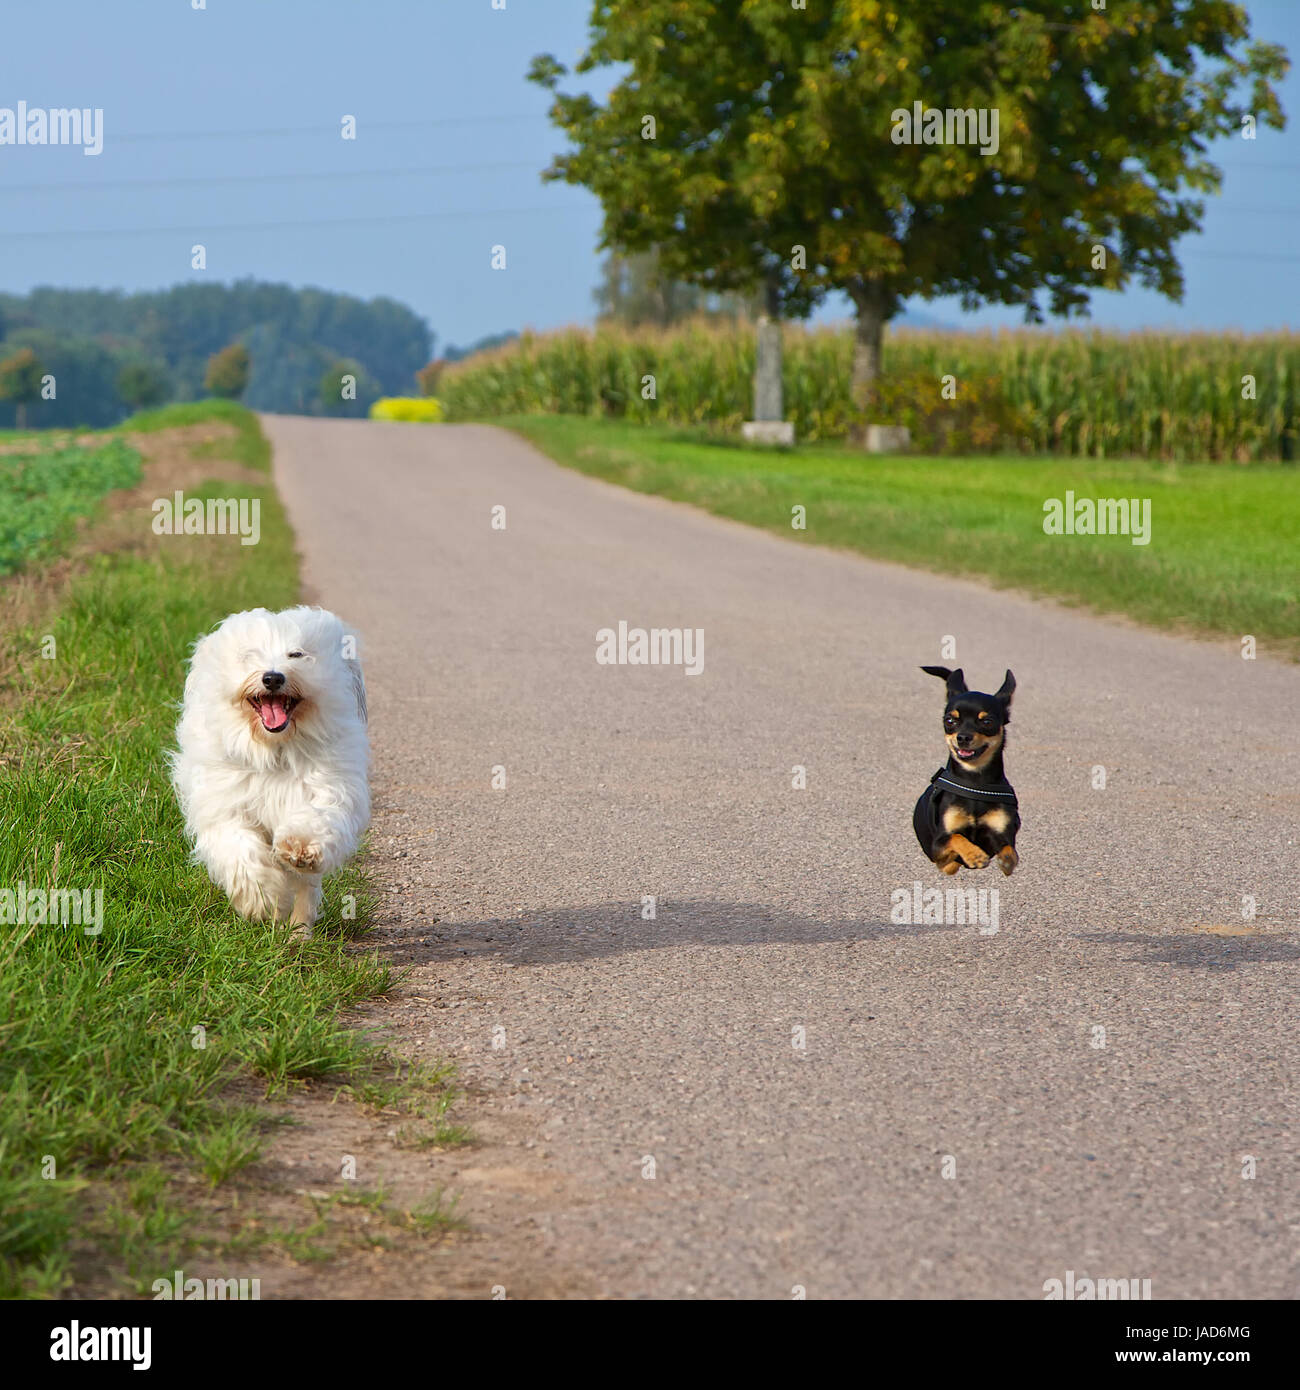 Zwei kleine Hunde beim Wettrennen, im Hintergrund die Straße und Felder. Stock Photo